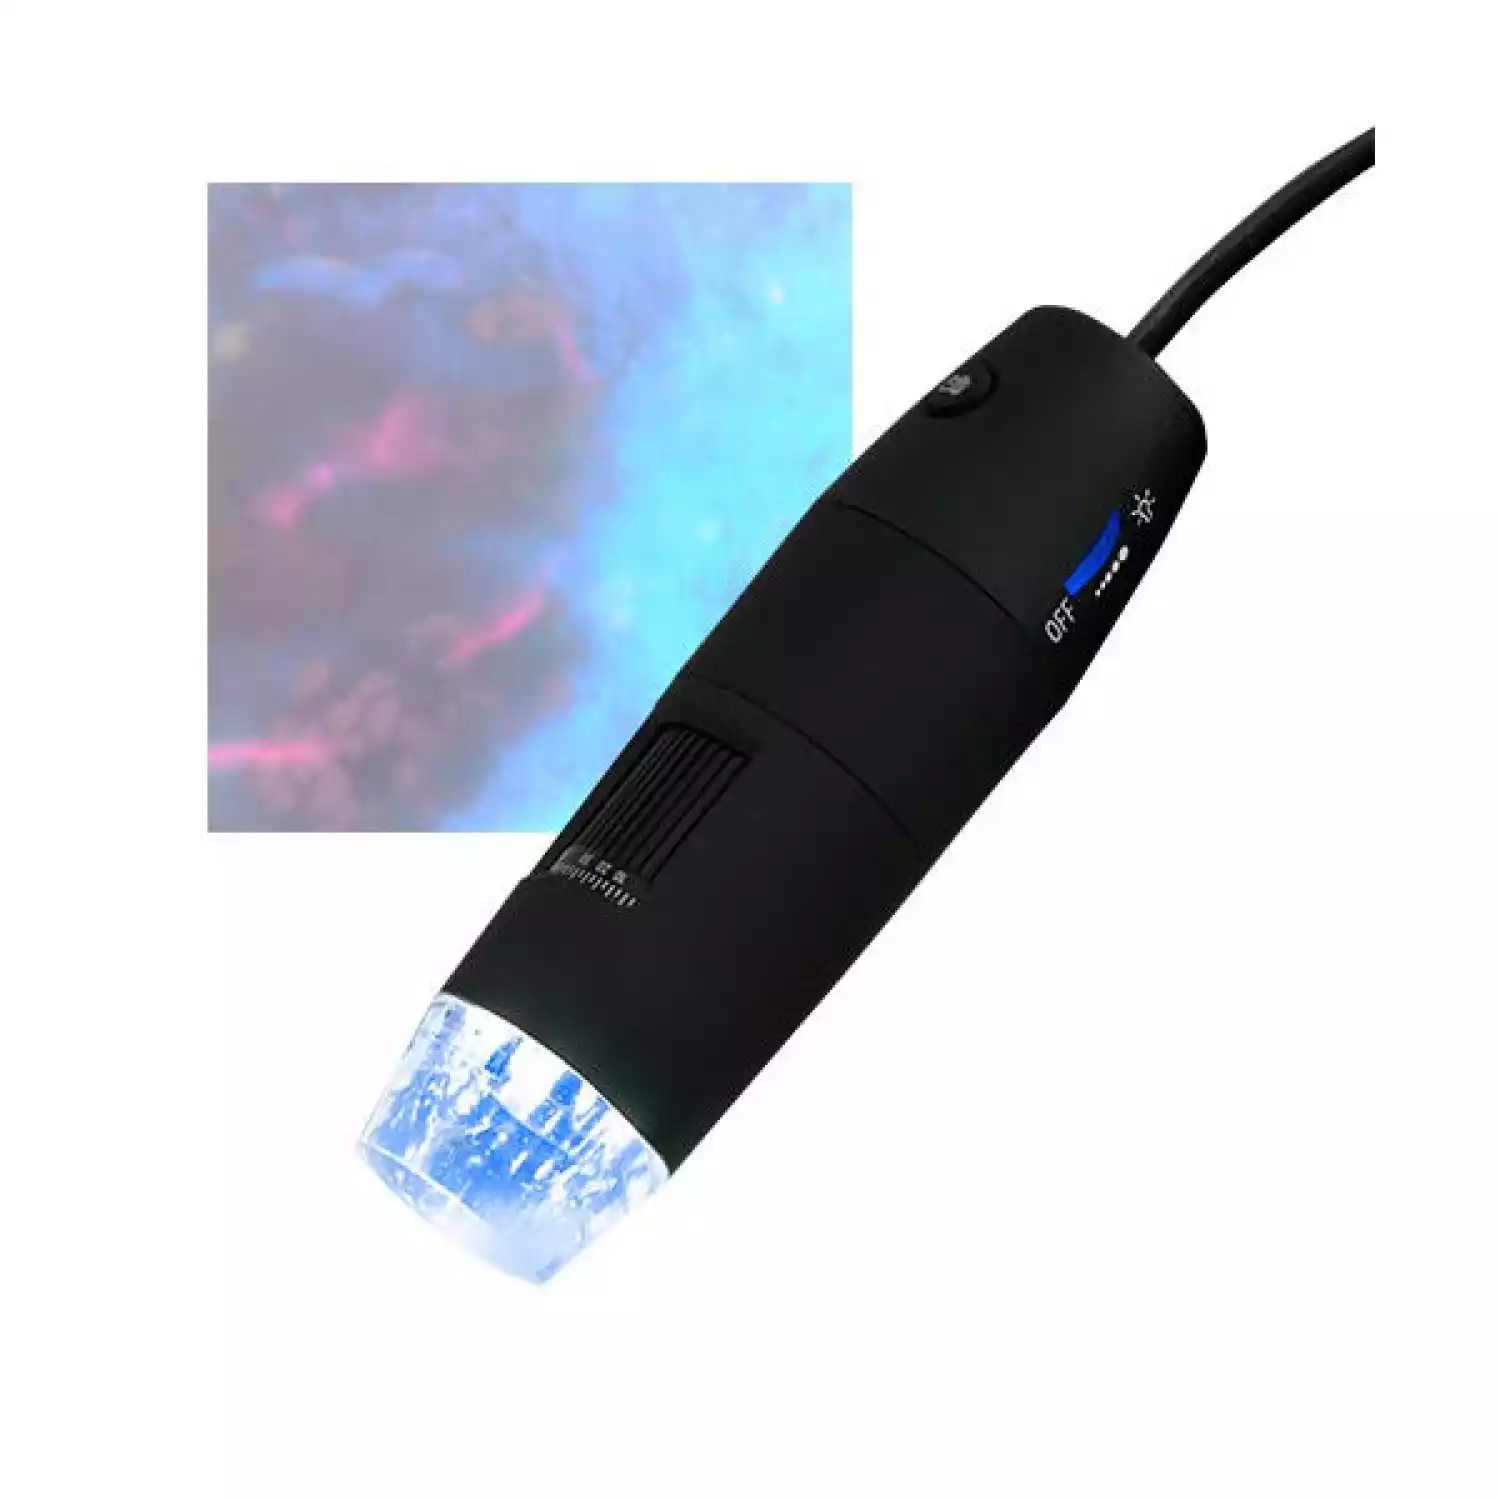 USB-микроскоп PCE MM 200 UV c ультрафиолетовой подсветкой - 2